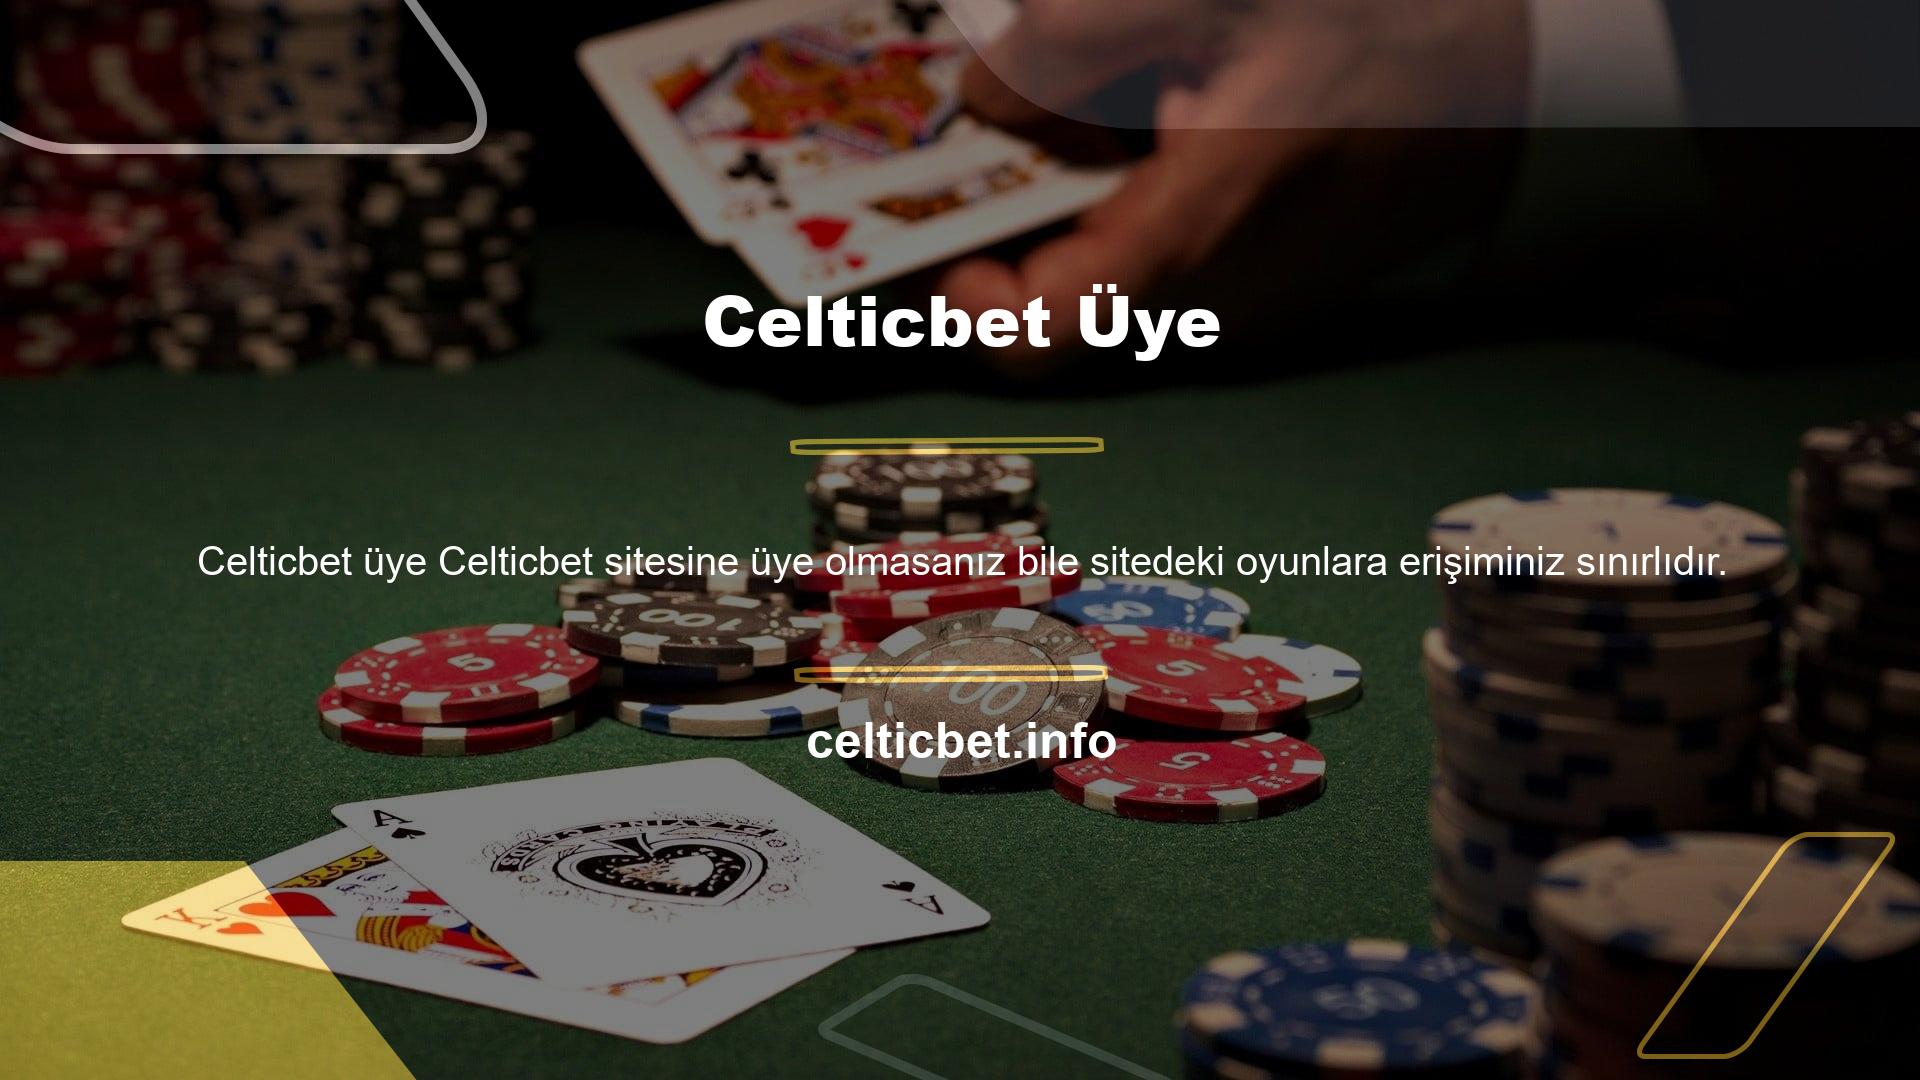 Üye olarak birçok bonus ve fırsatın bulunduğu Celticbet web sitesinde bu fırsatlardan yararlanabilirsiniz